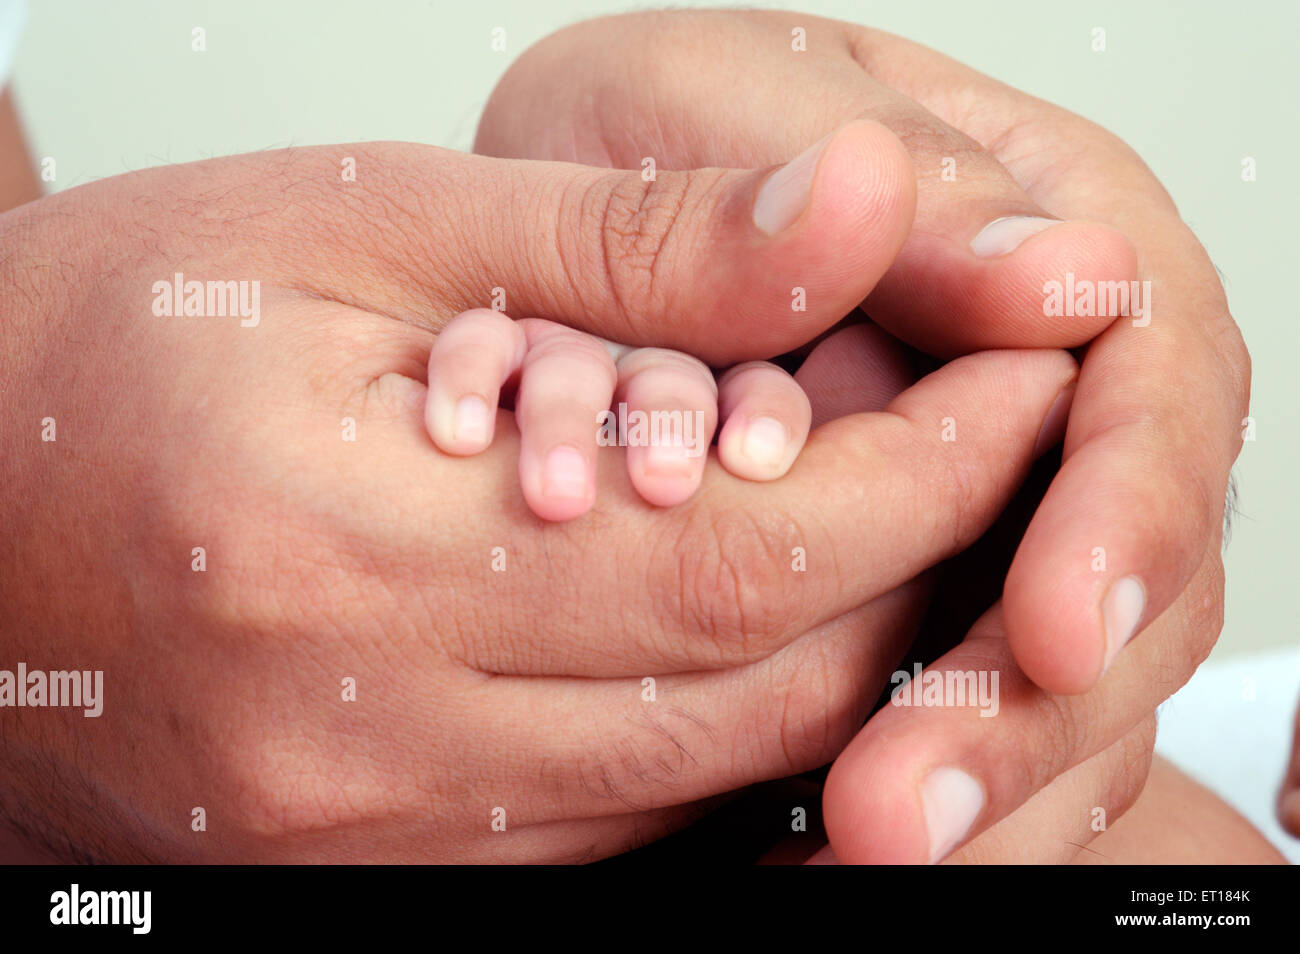 Padre sosteniendo la mano de new born baby - MR#736J y MR#736LA Foto de stock